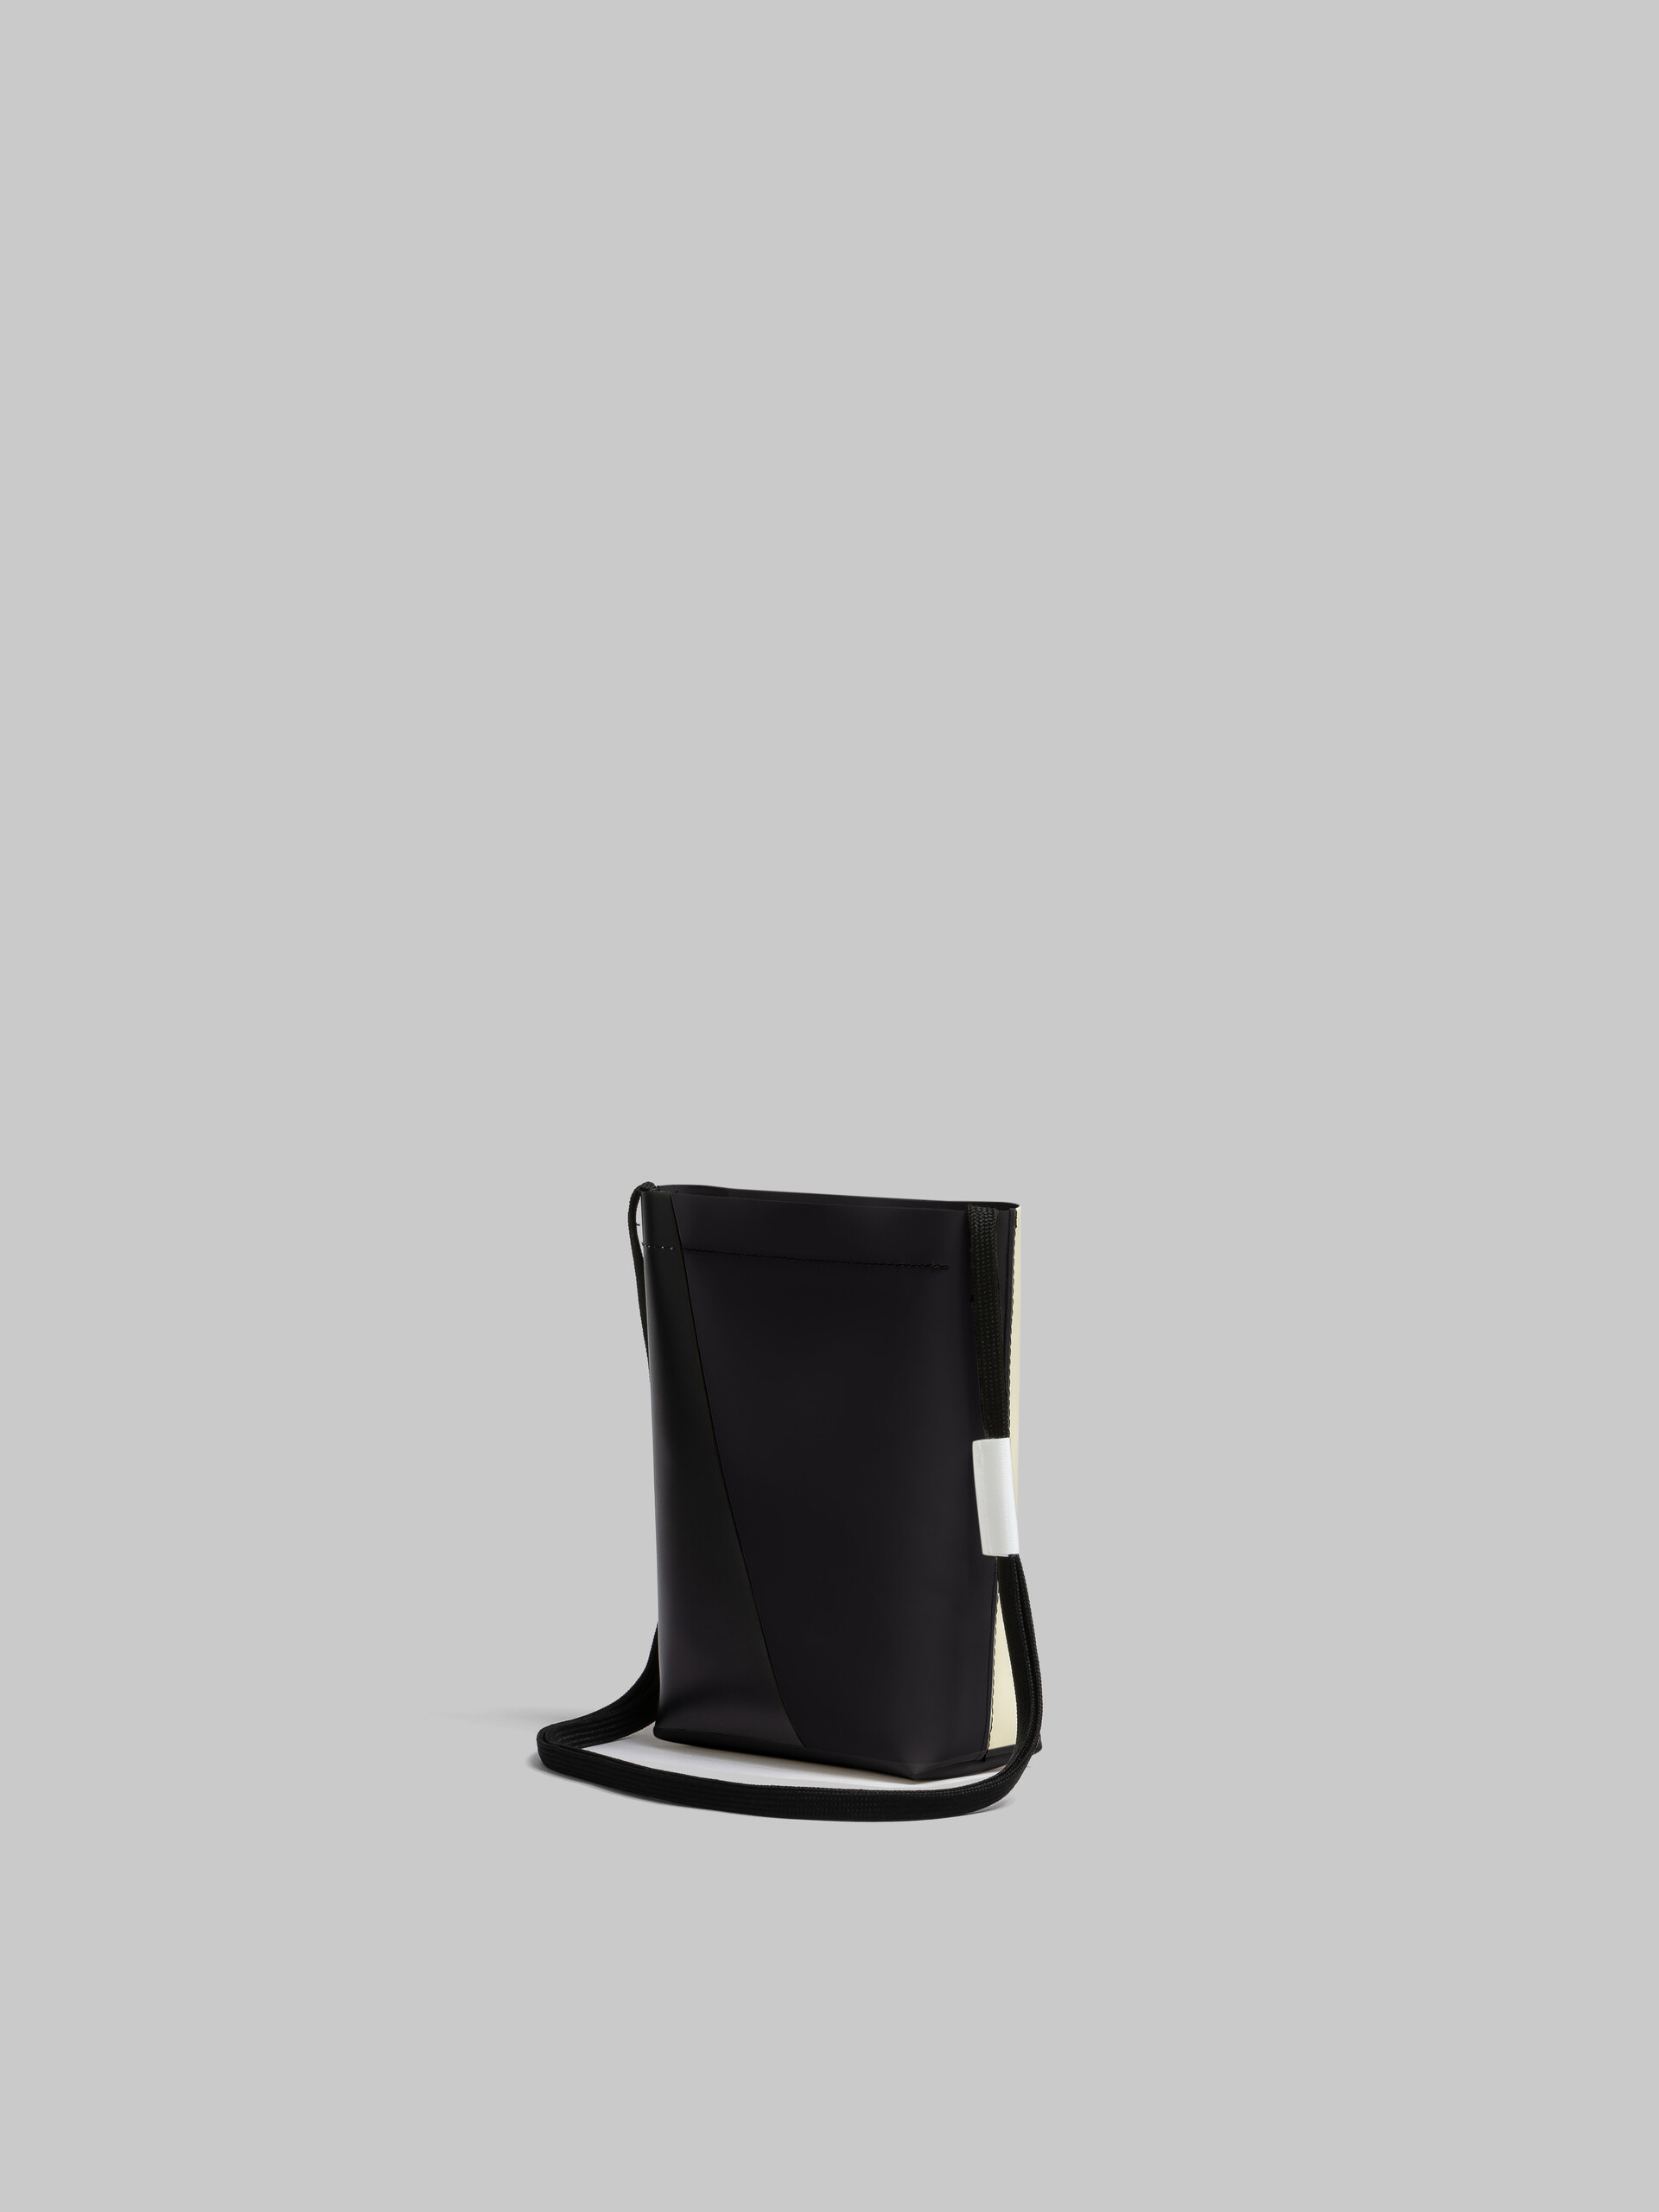 Bolso bandolera Tribeca blanco y negro con correa tipo cordón - Bolsos de hombro - Image 3